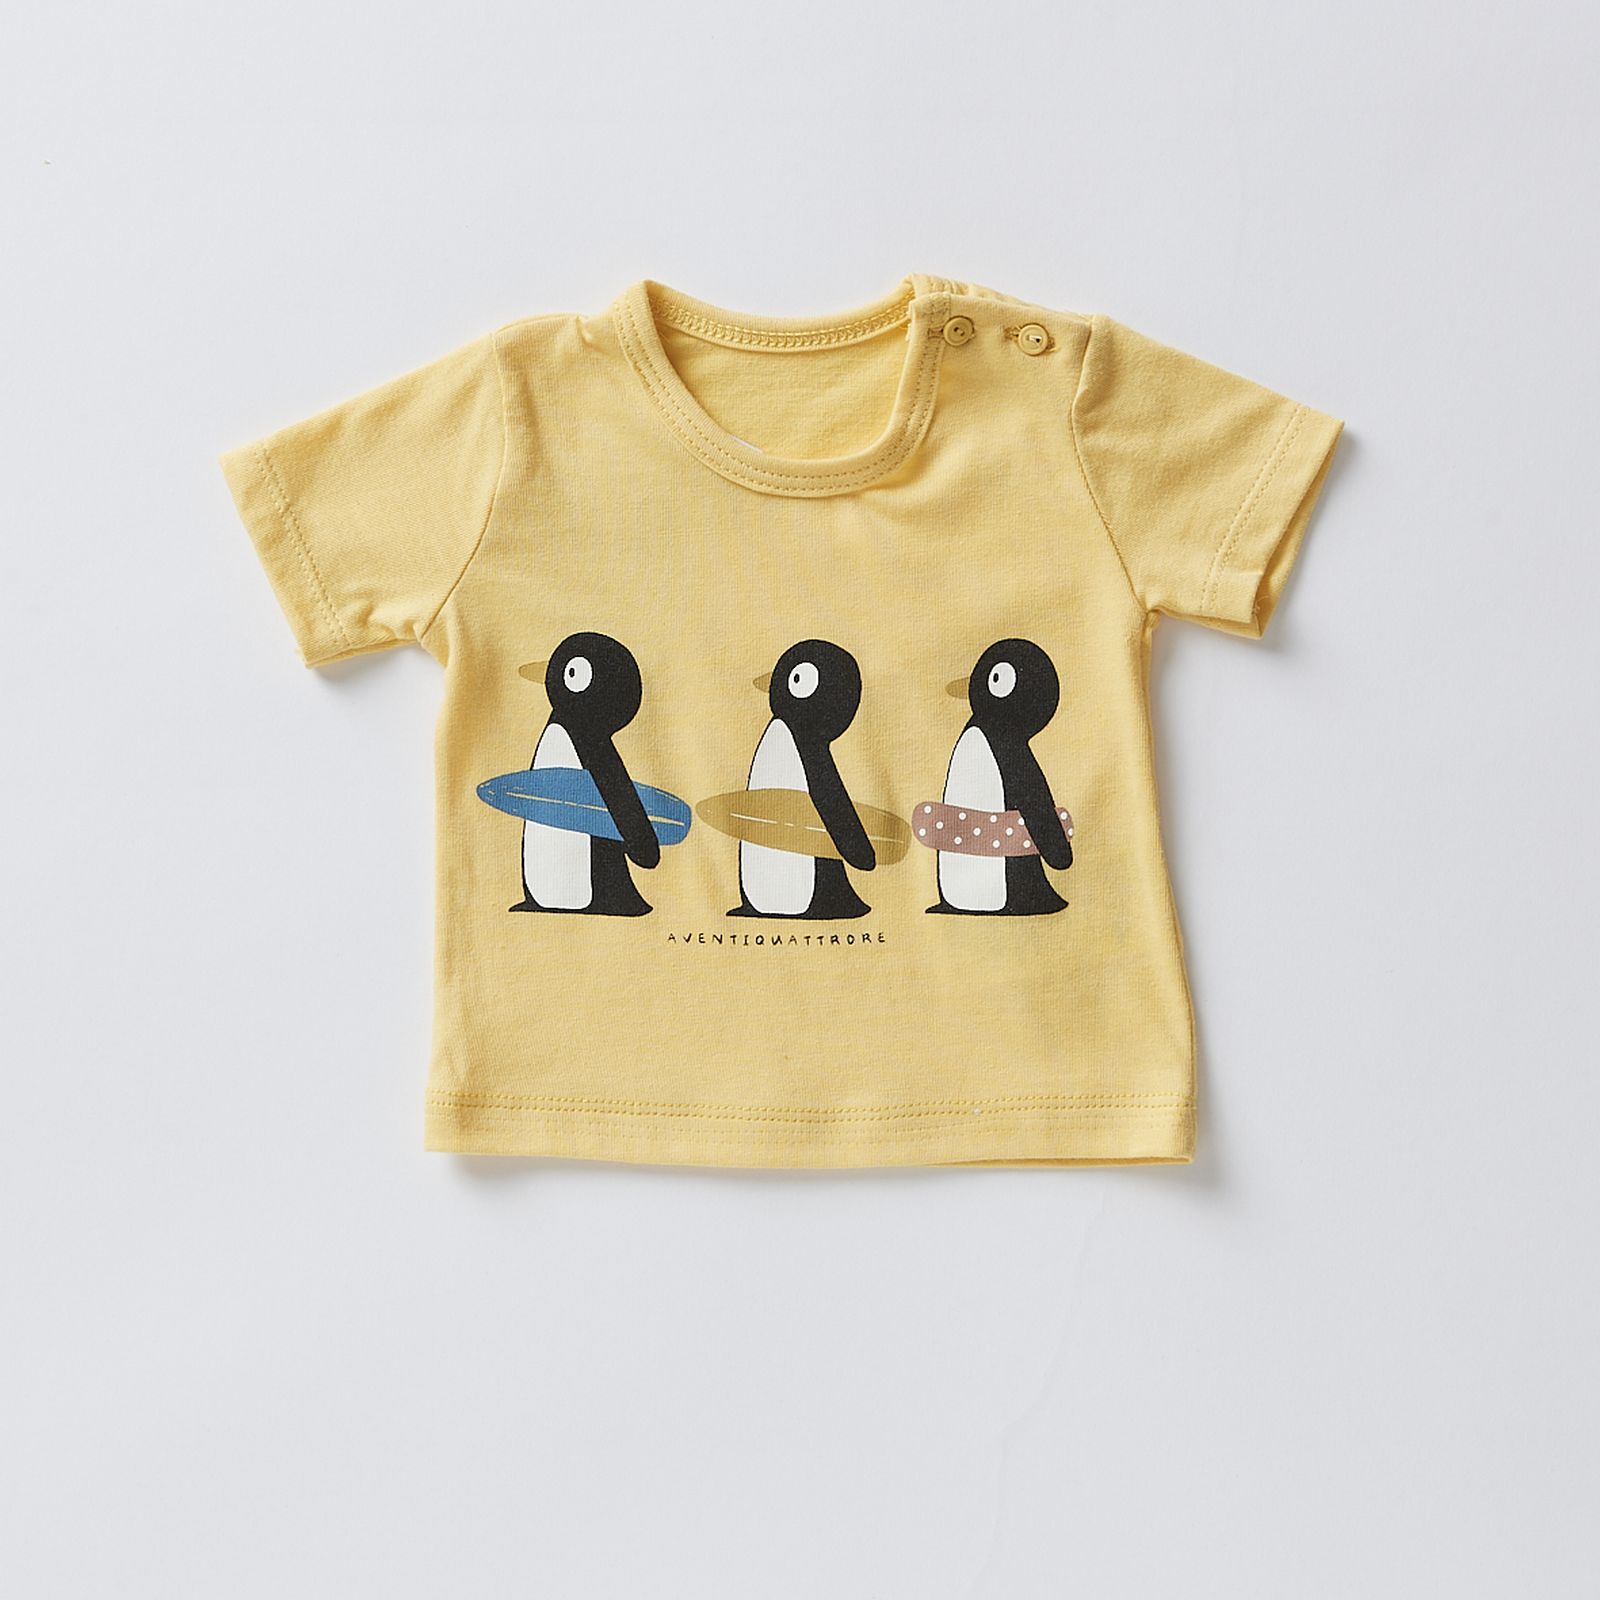 T-Shirt Mare Boy: Colori Vivaci e Comfort per Piccole Grandi Avventure Estive!